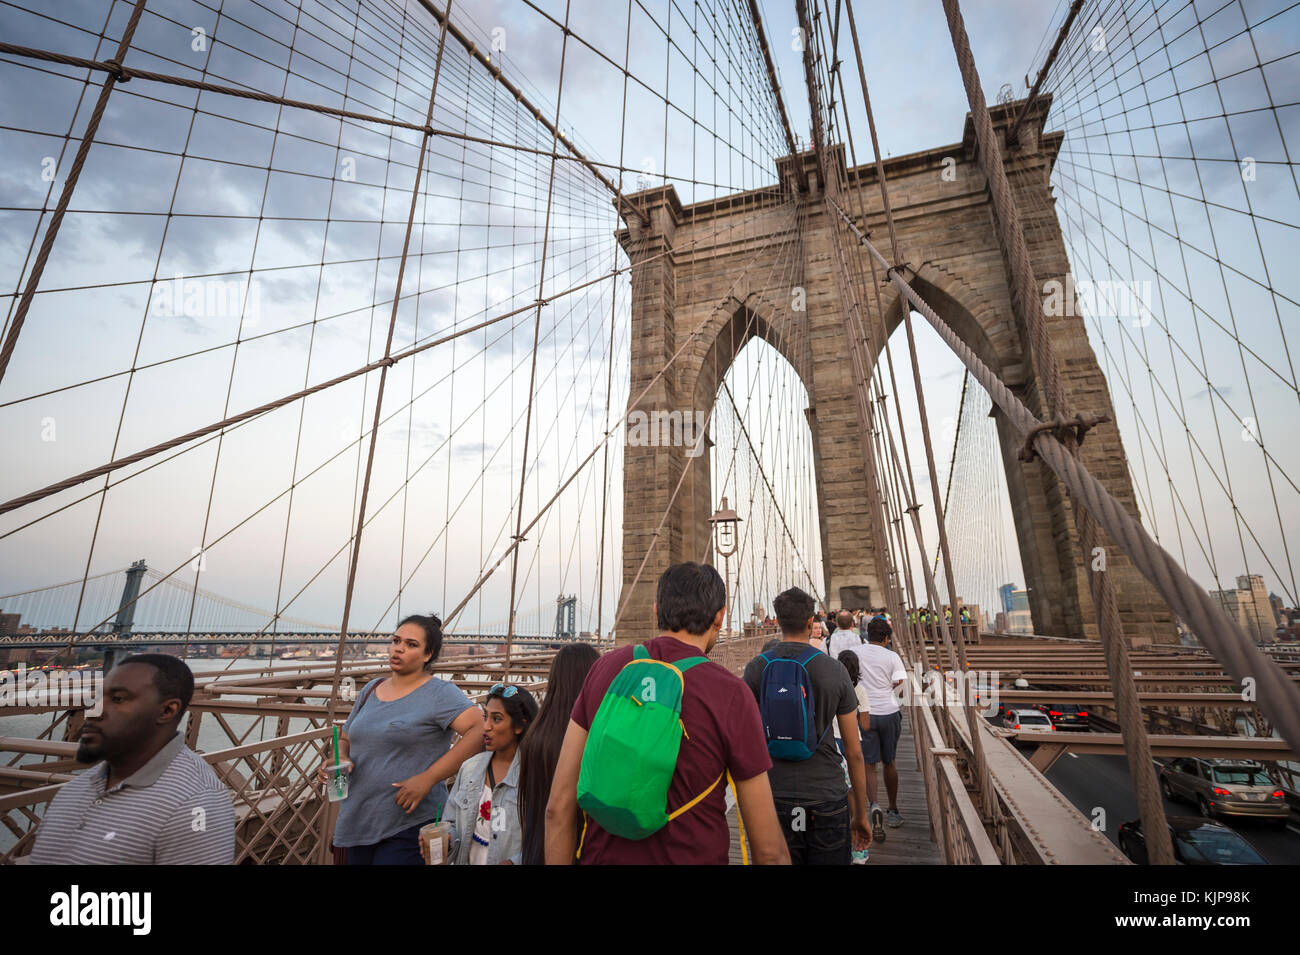 New York - 26 août 2017 : les touristes et habitants de la lutte pour l'espace sur l'allée piétonne bondée menant à travers le pont de Brooklyn au crépuscule. Banque D'Images